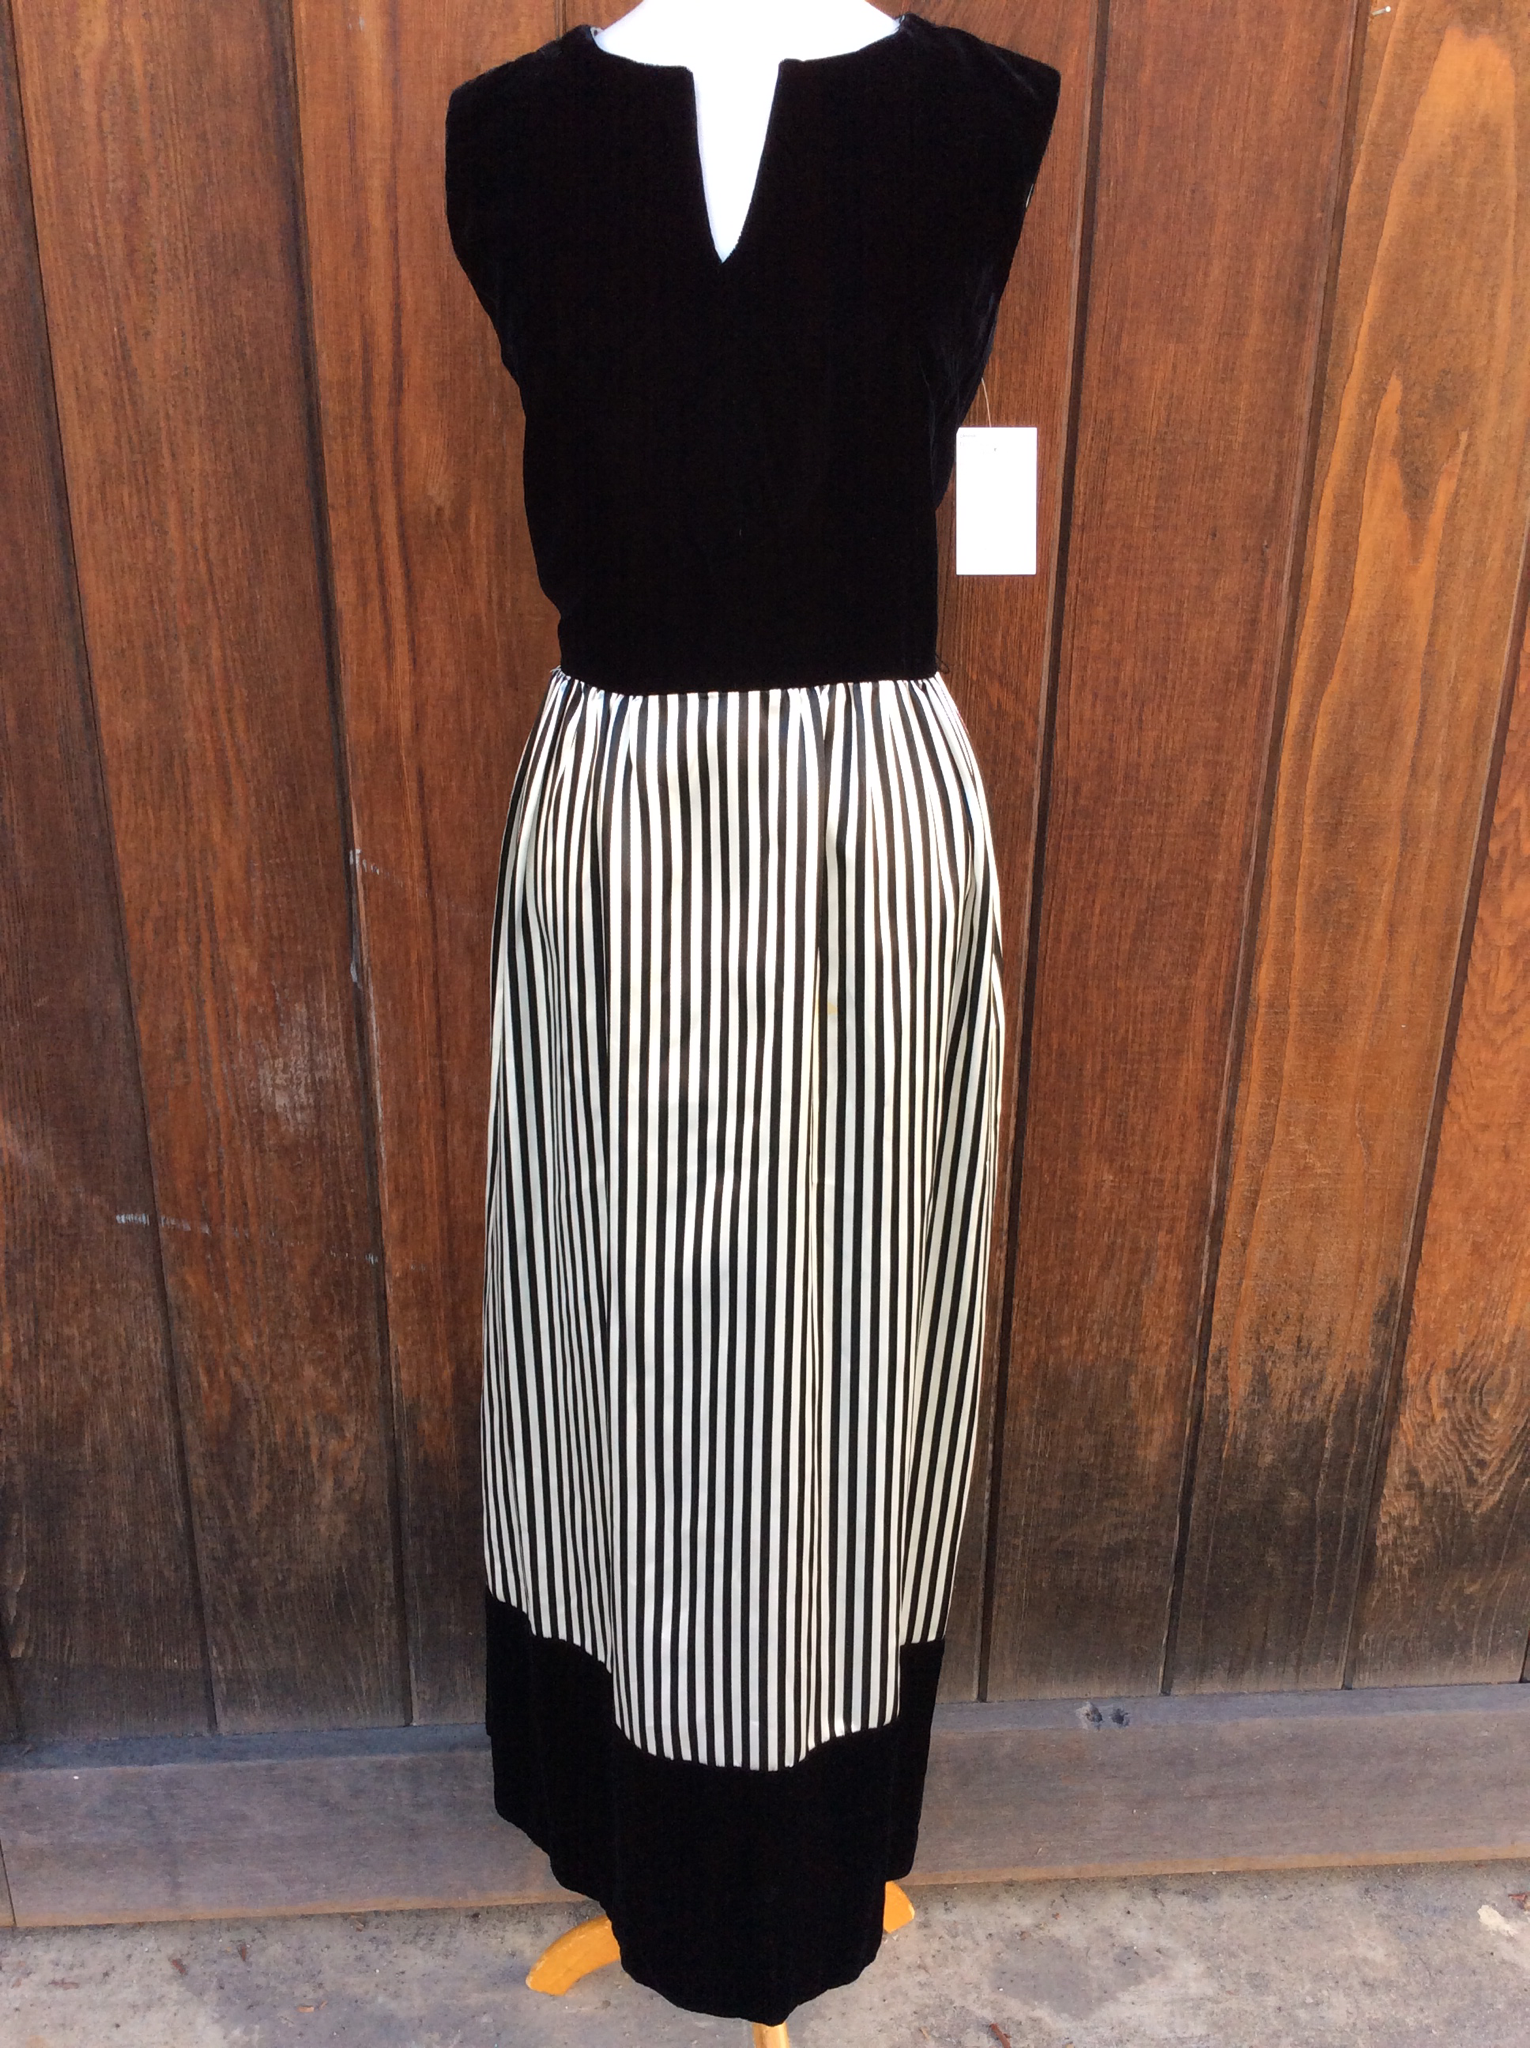 Black velvet striped dress